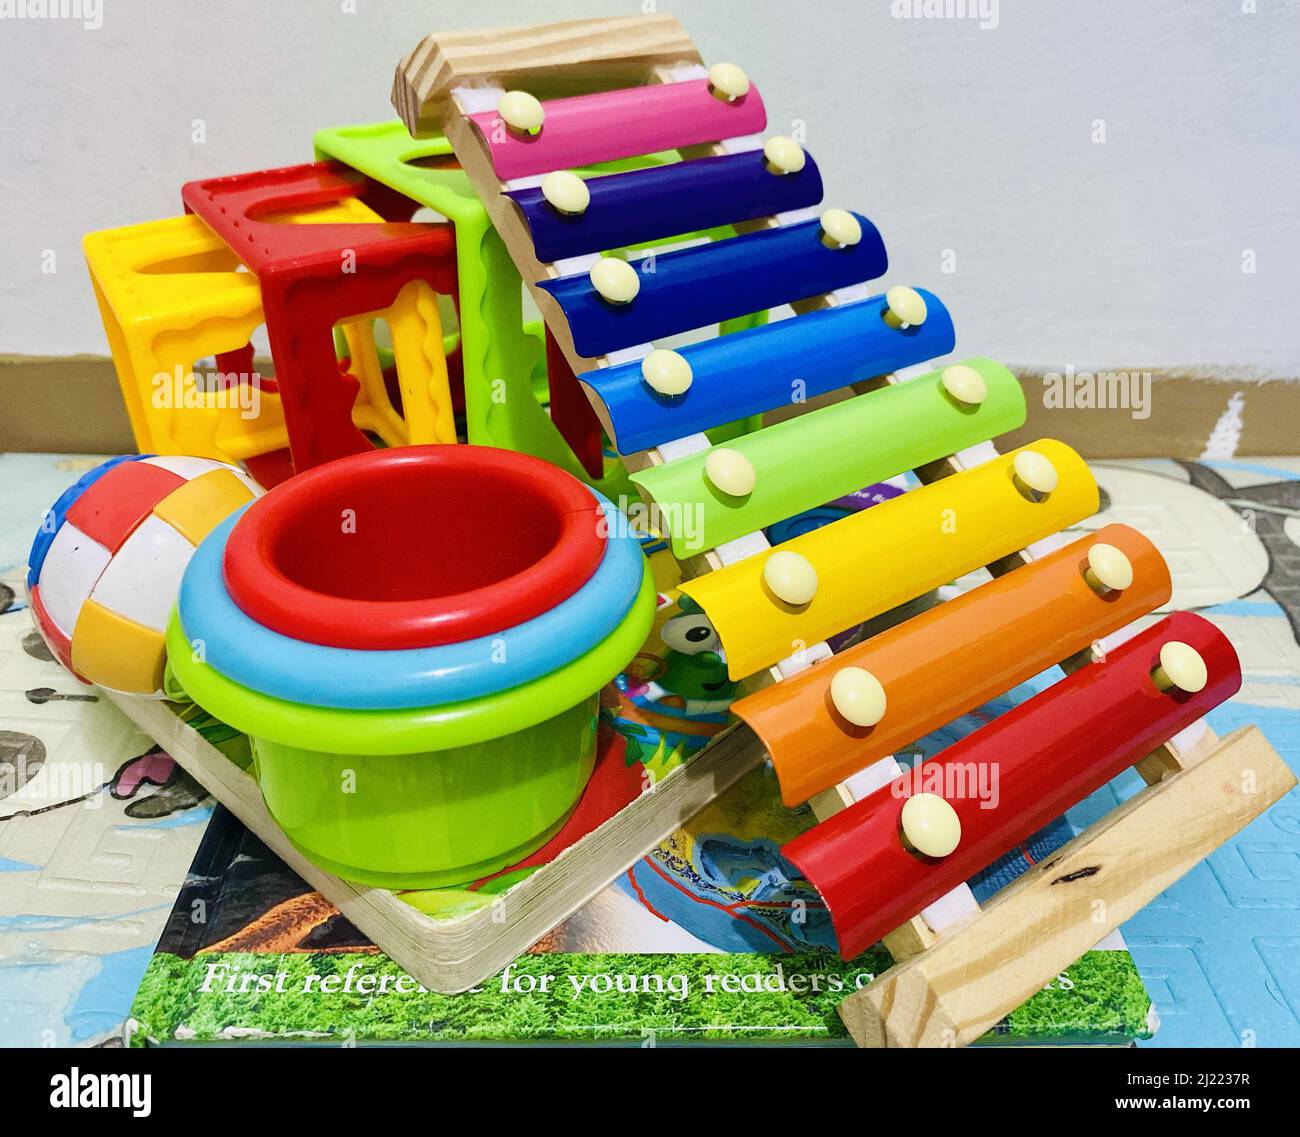 Eine Nahaufnahme der bunten Spielzeuge mit Blöcken, Xylophon, einem Ball, einem Buch und Tassen Stockfoto